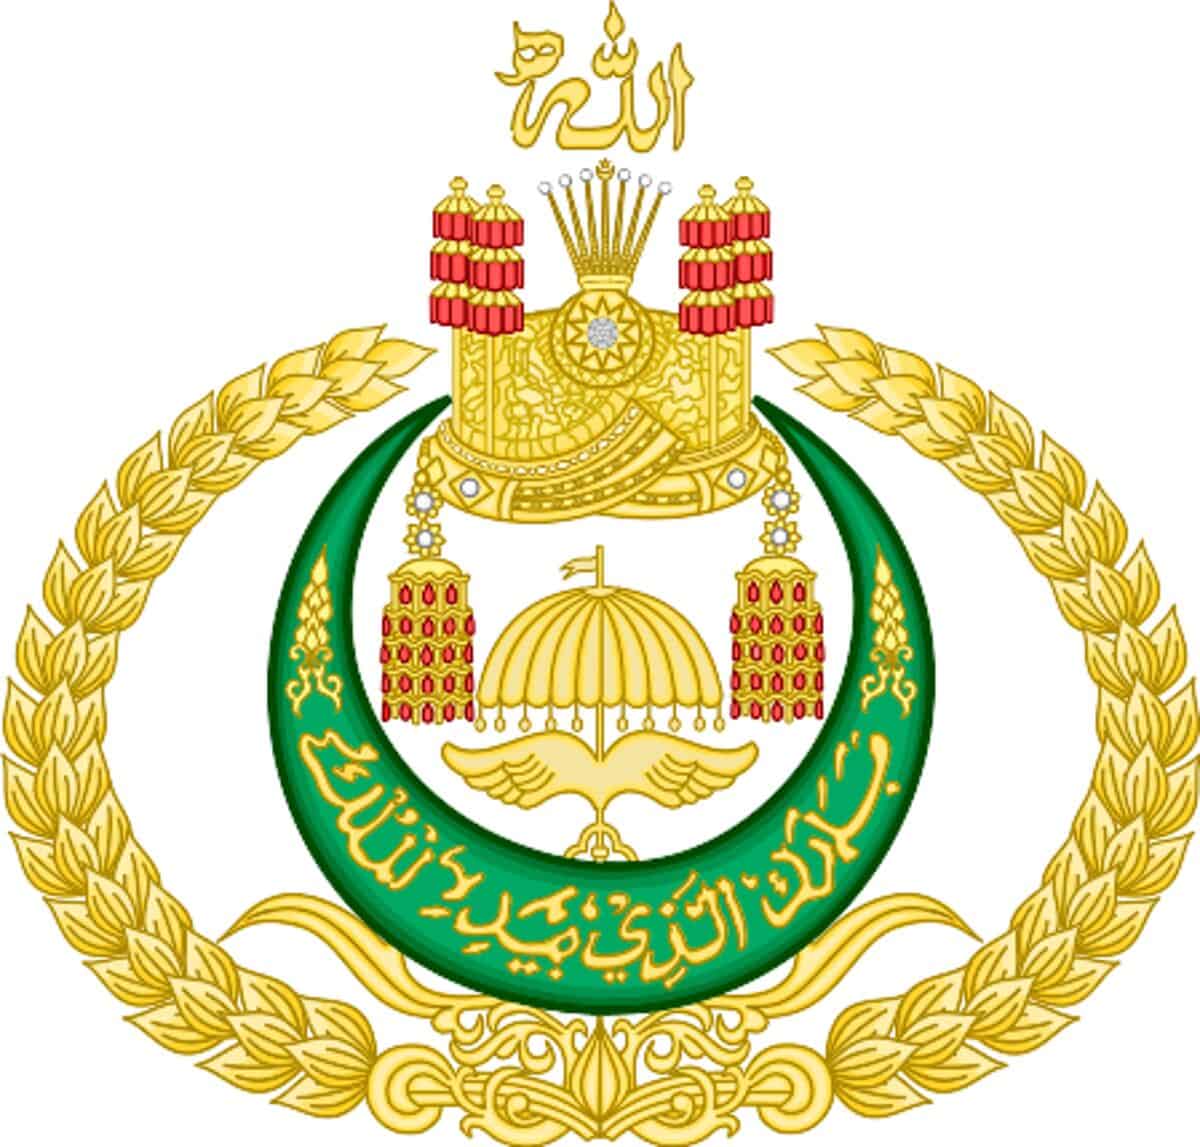 Sultan of Brunei - Famous Politician